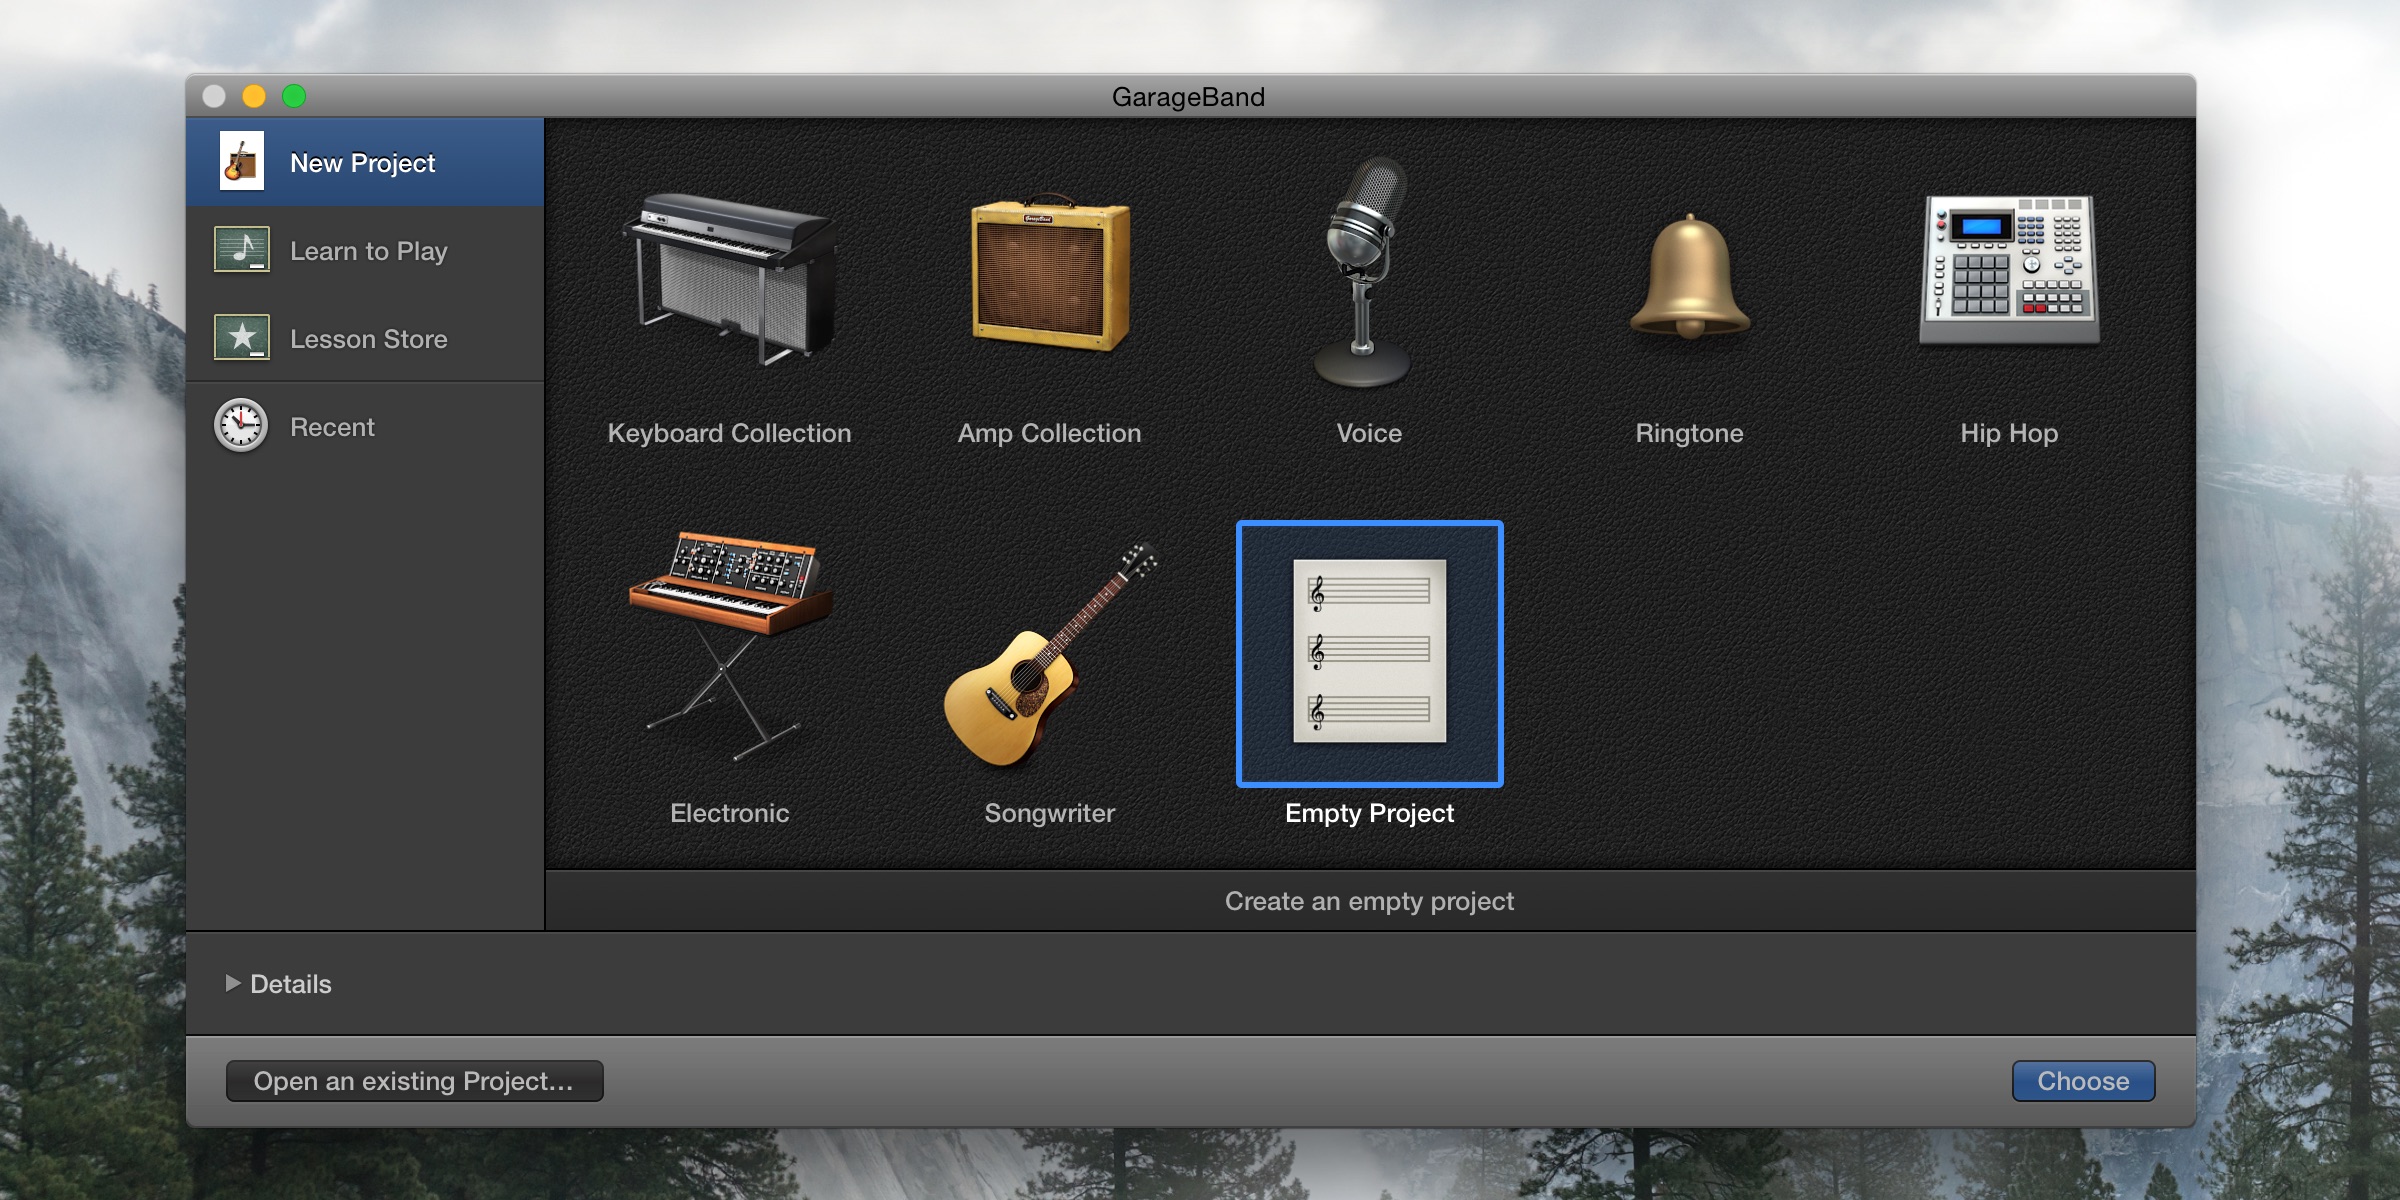 garageband for mac os x 10.7.5 download